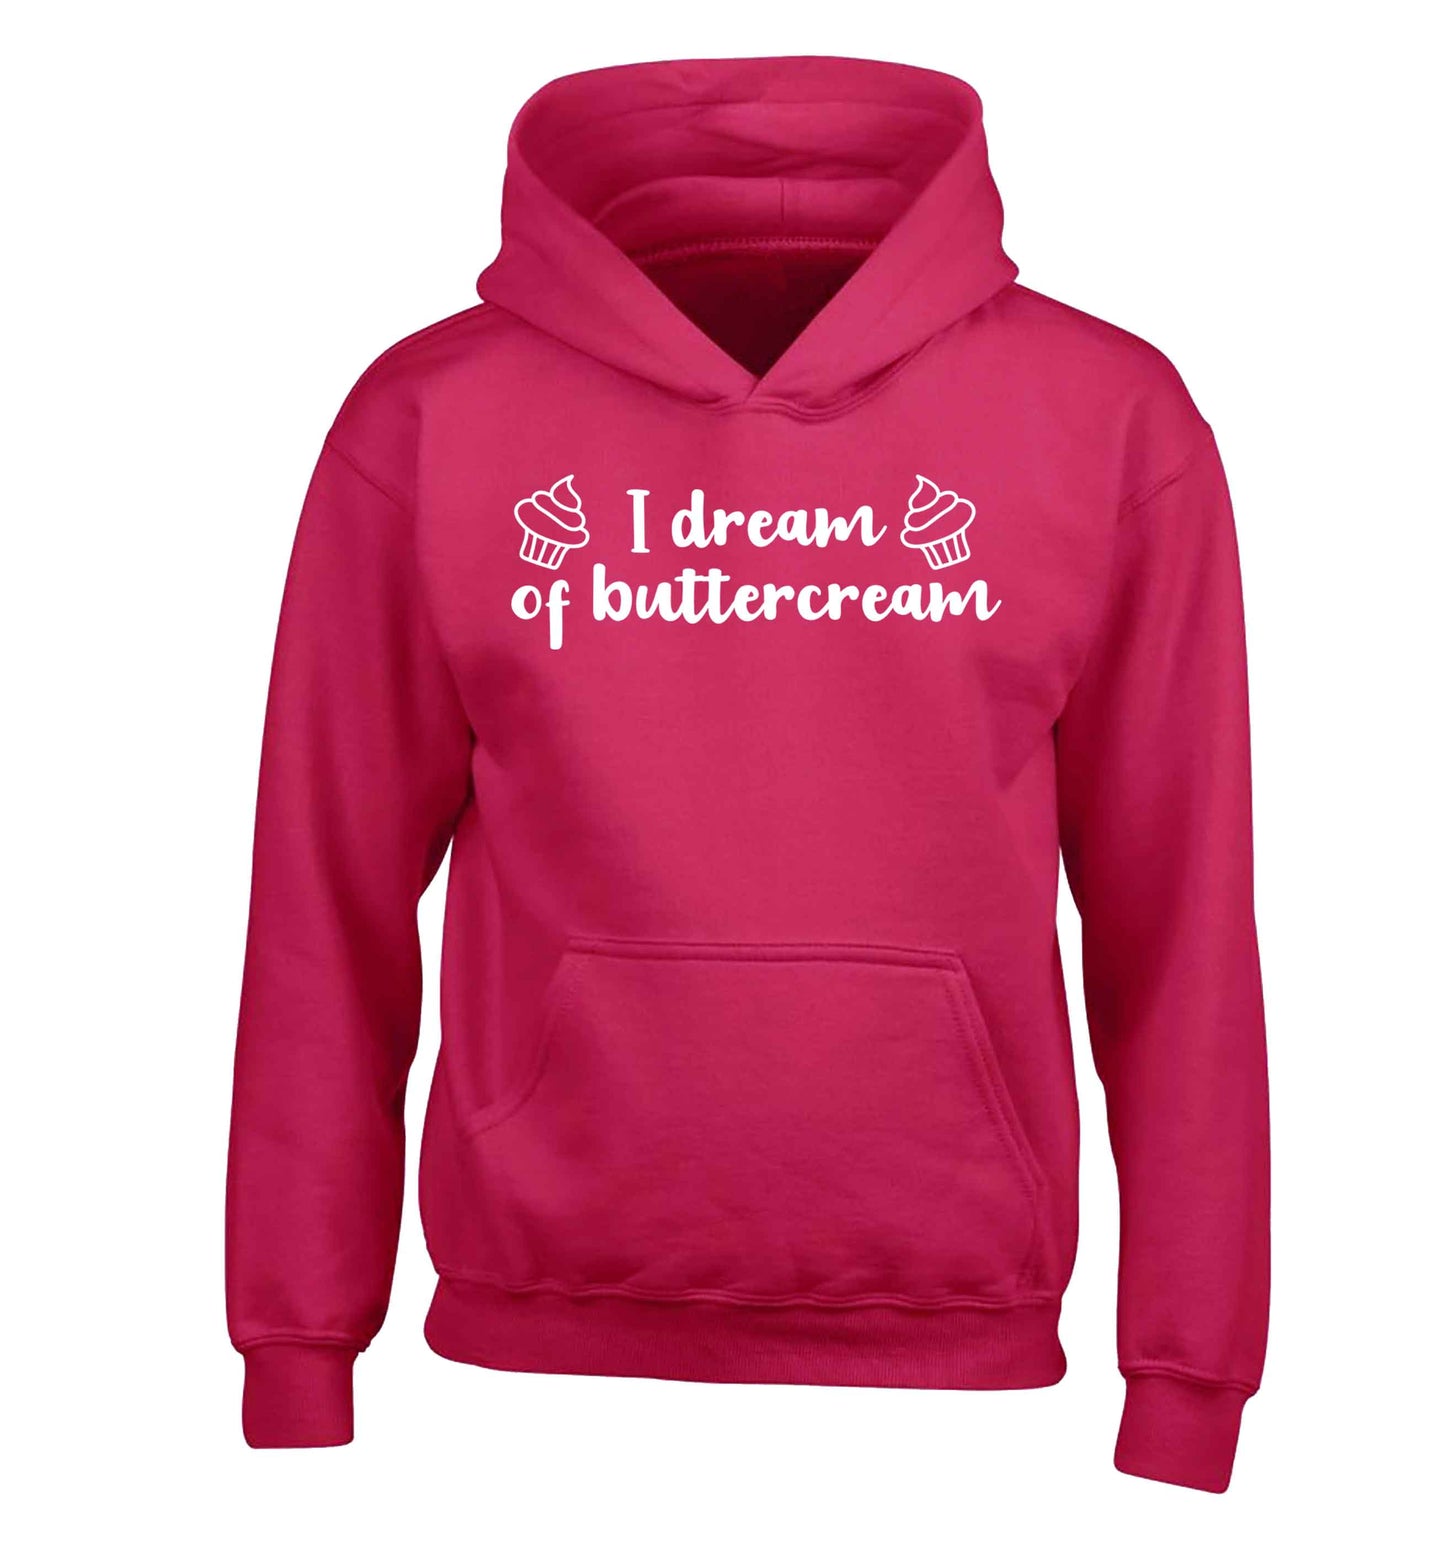 I dream of buttercream children's pink hoodie 12-13 Years